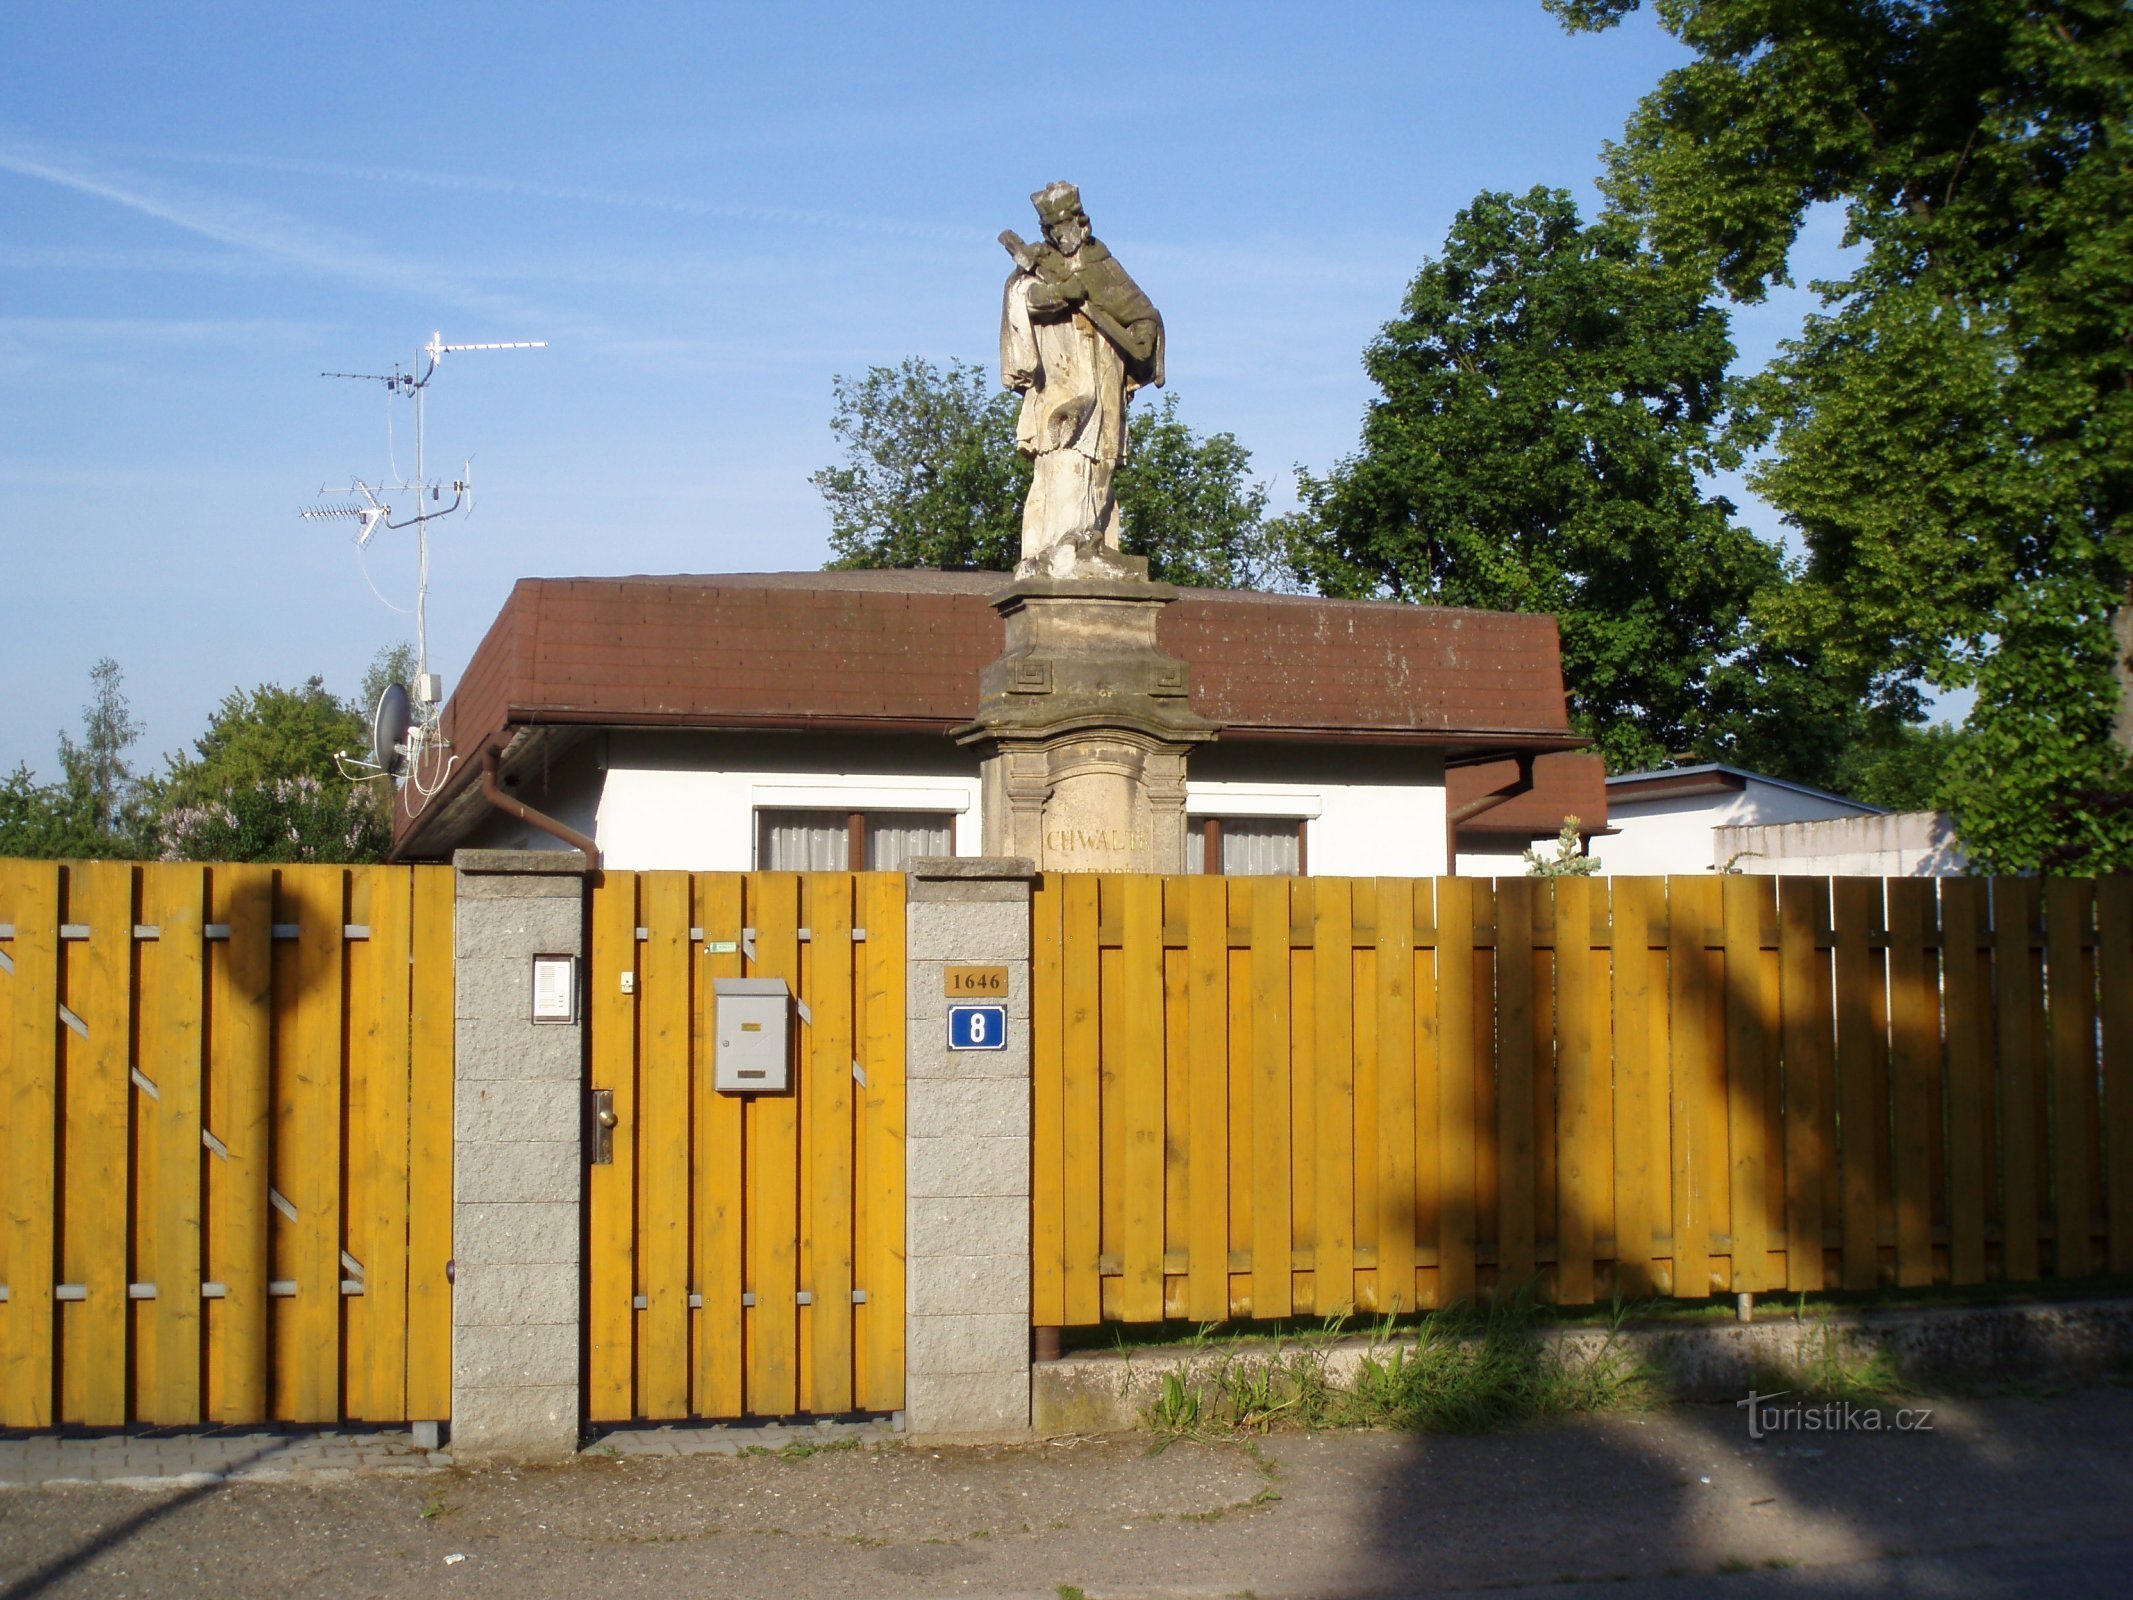 Статуя св. Ян Непомуцкий на улице Медковой (Градец Кралове, 11.5.2011)